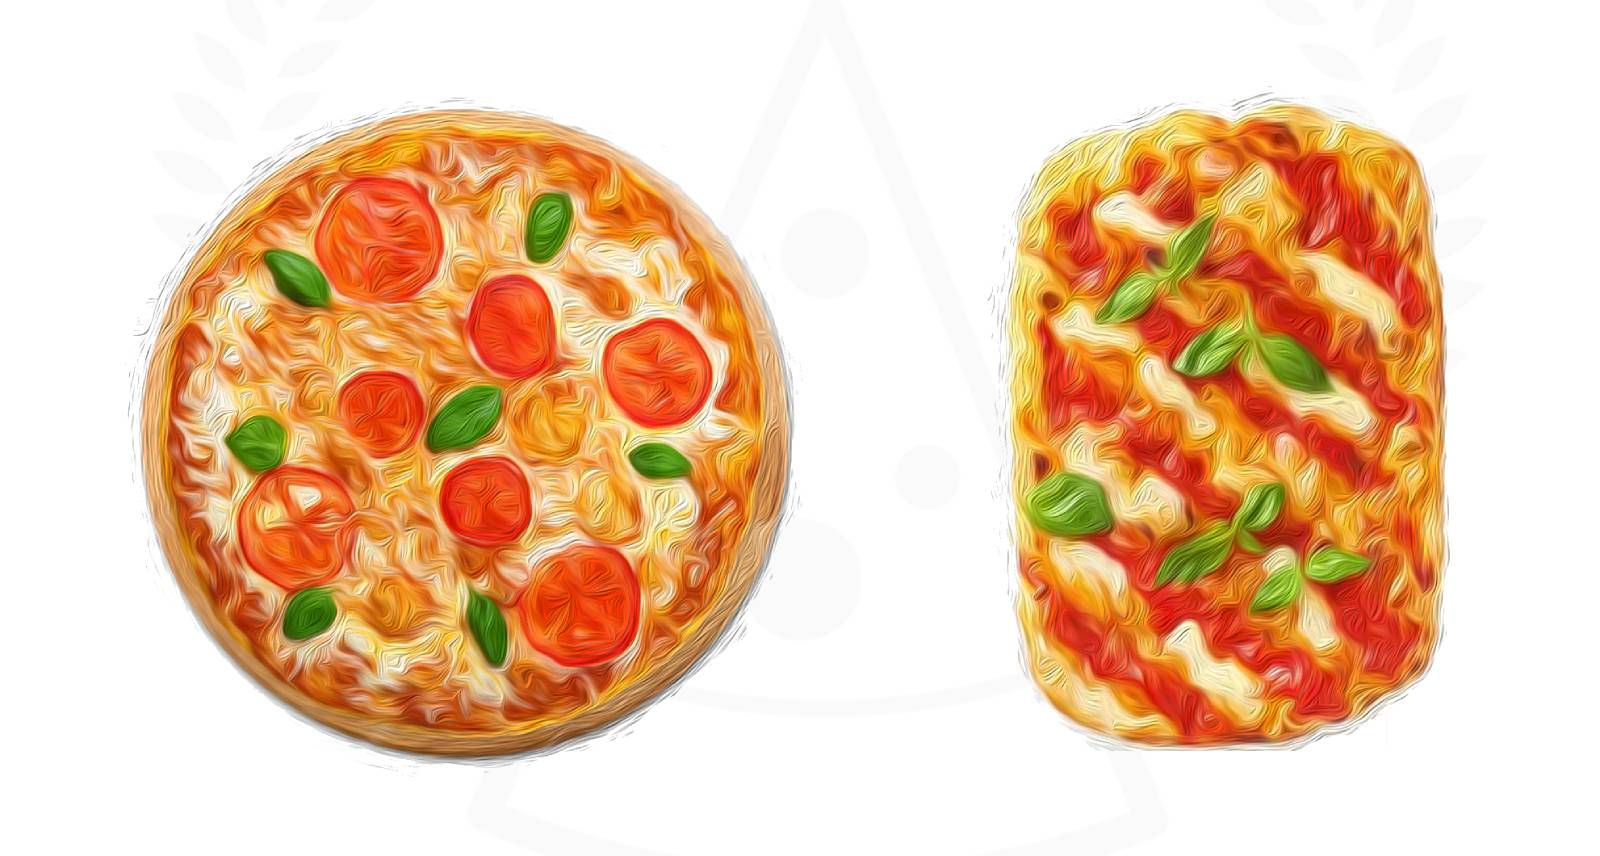 Pizza and Pinsa compared